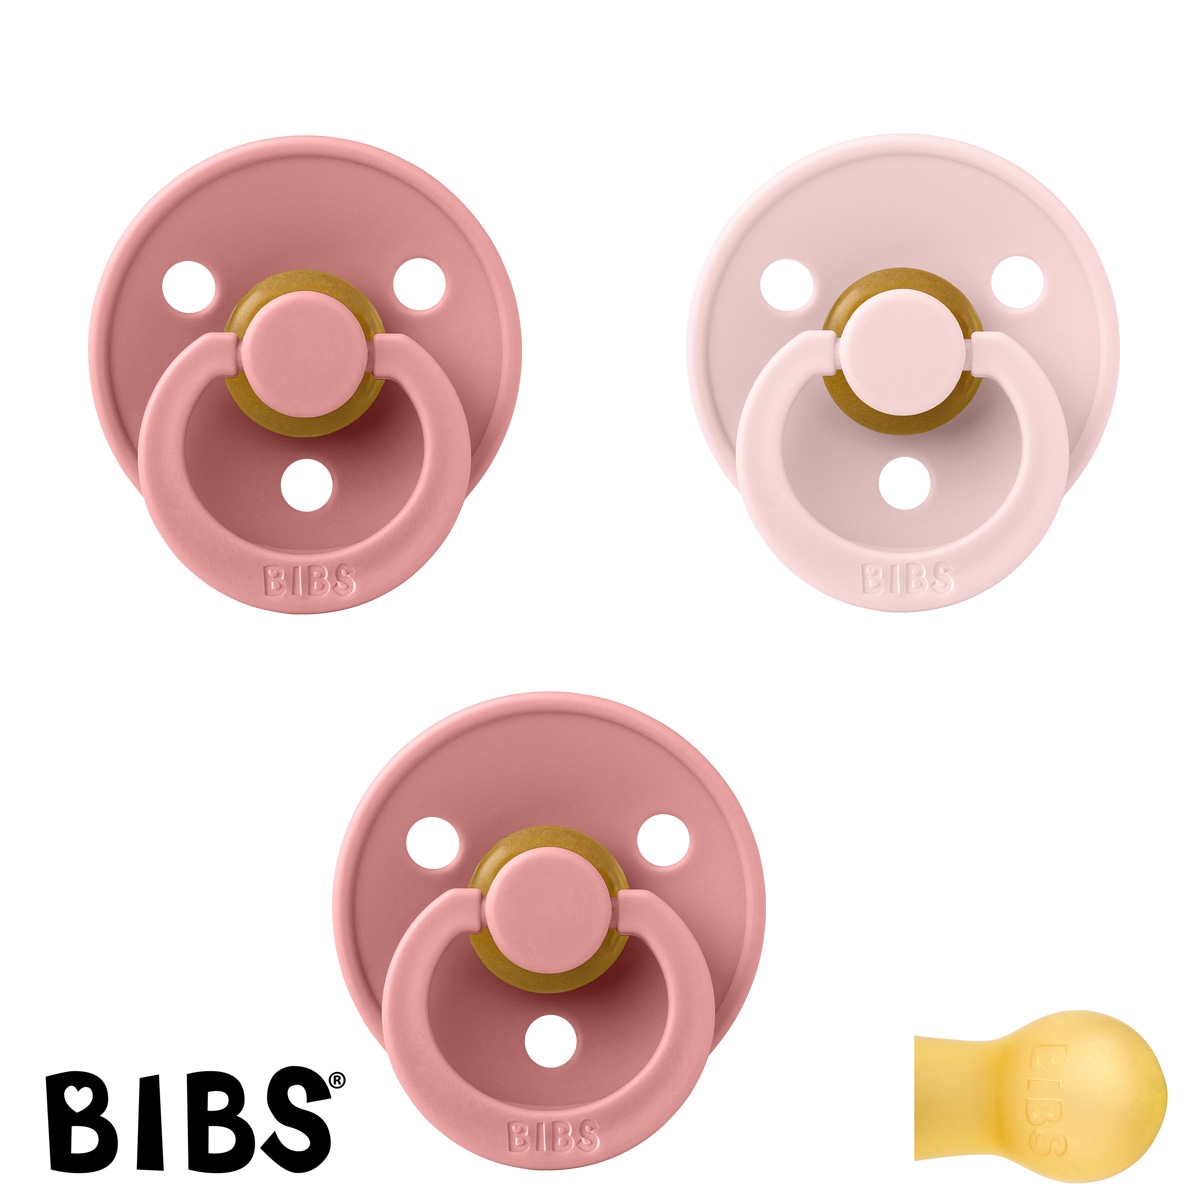 BIBS Colour Schnuller mit Namen, Gr. 1, 2 Dusty Pink, 1 Blossom, Rund Latex, (3er Pack)